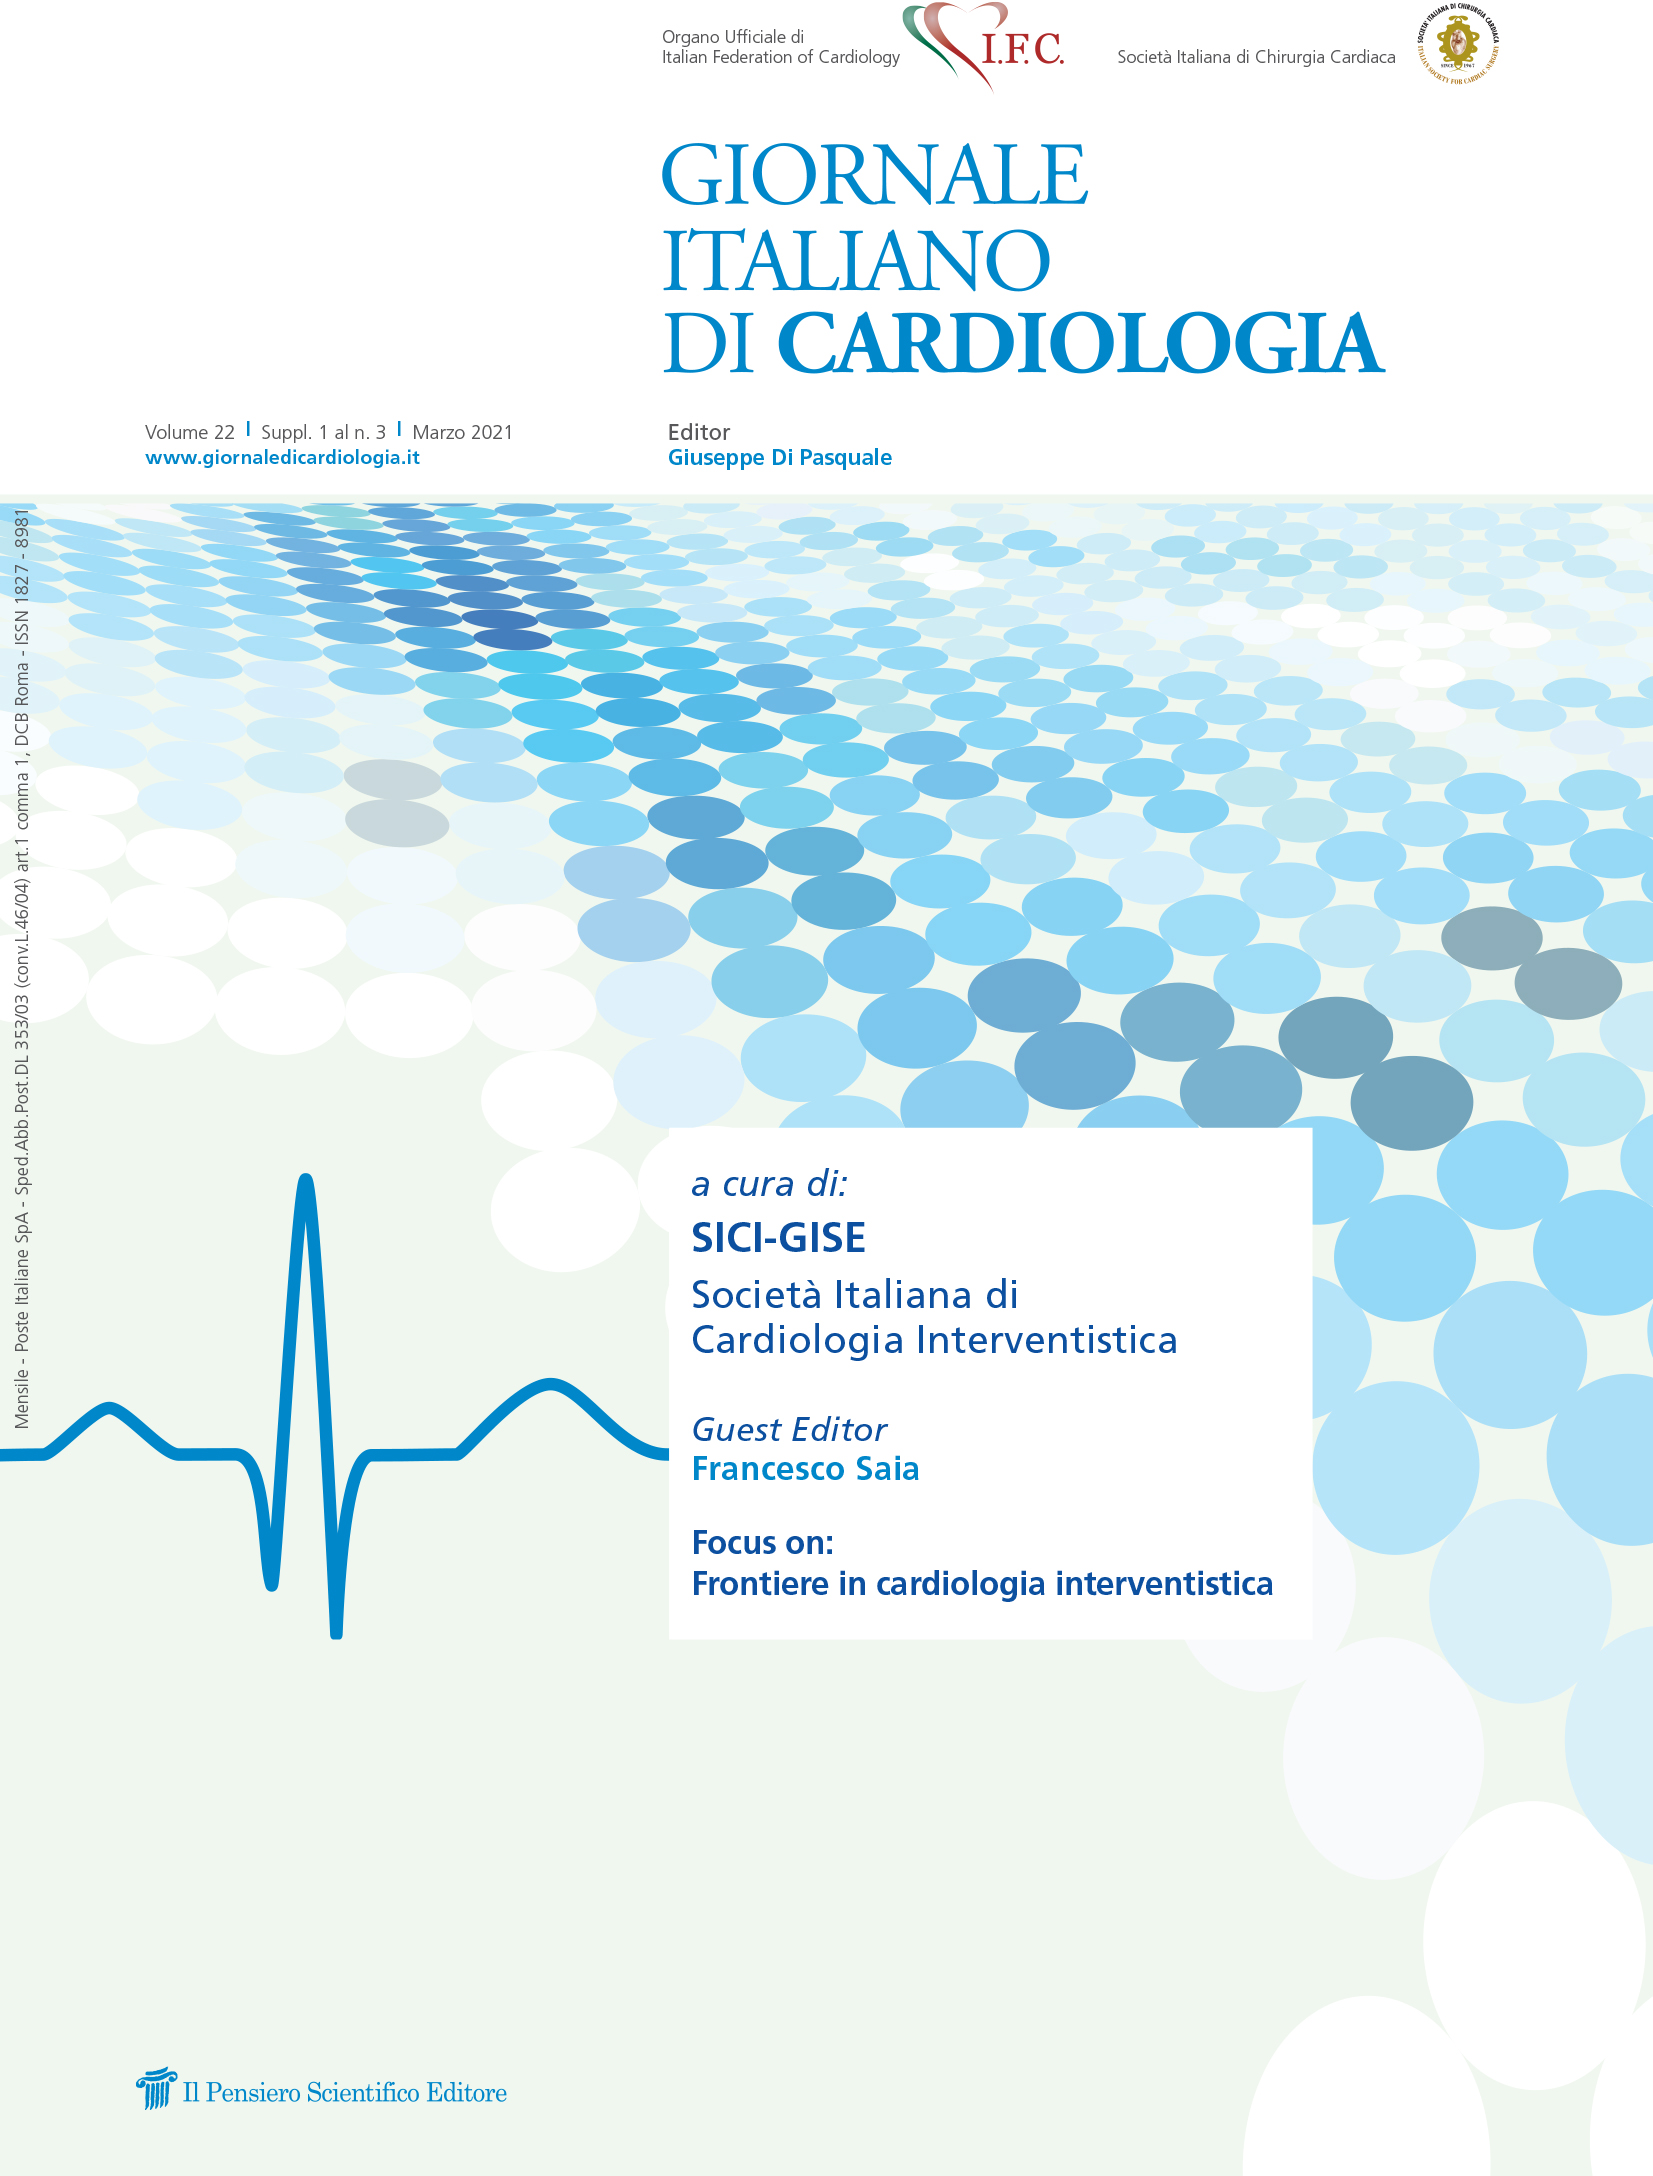 2021 Vol. 22 Suppl. 1 al N. 3 Marzoa cura di: SICI-GISE Società Italiana di Cardiologia Interventistica